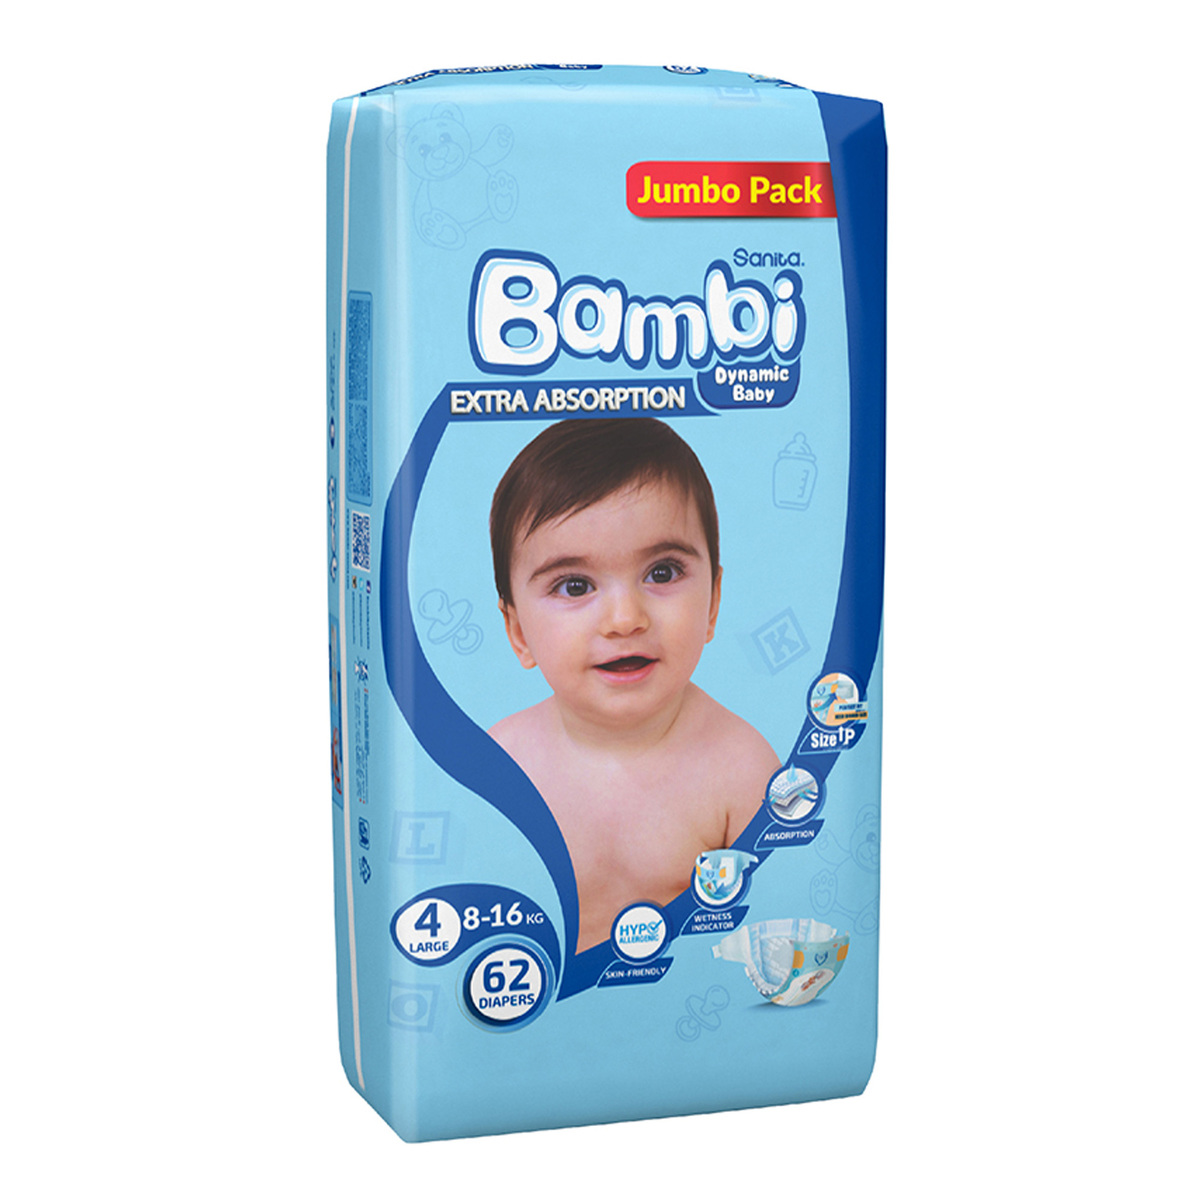 Sanita Bambi Baby Diaper Jumbo Pack Size 4 Large 8-16kg 62 pcs